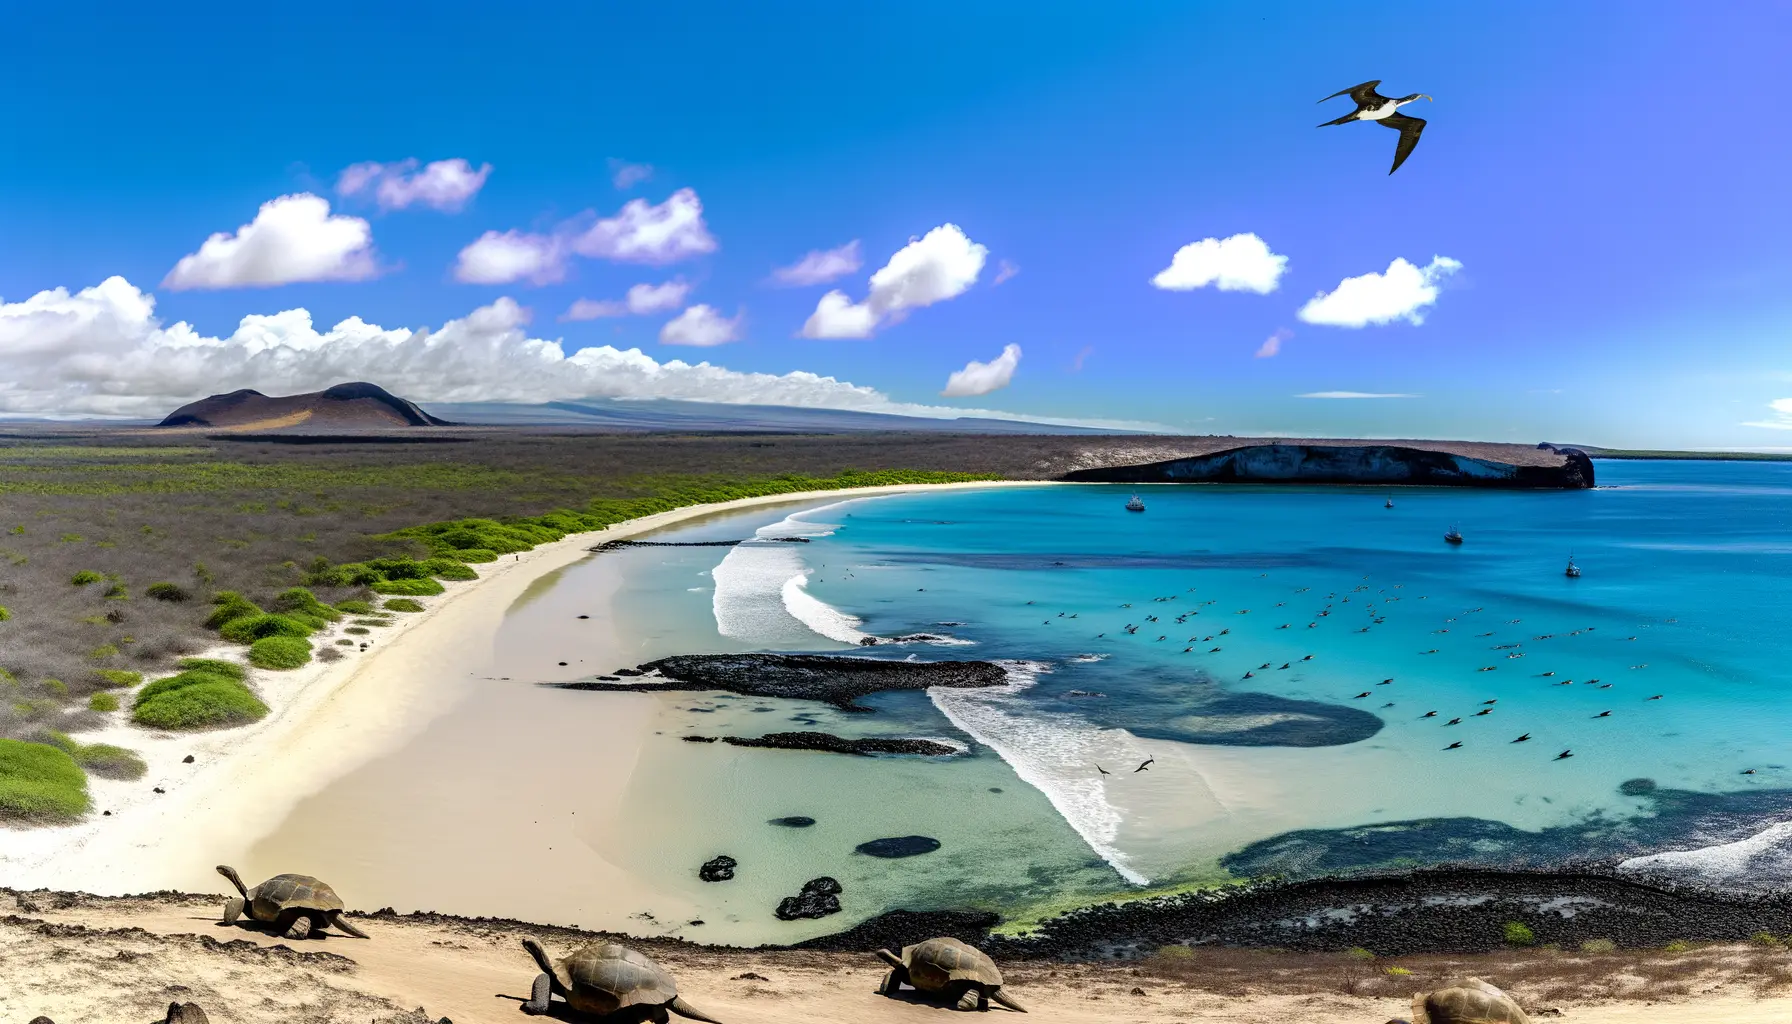 Panorama der Galapagos-Inseln mit Wasser, Tieren und Strand